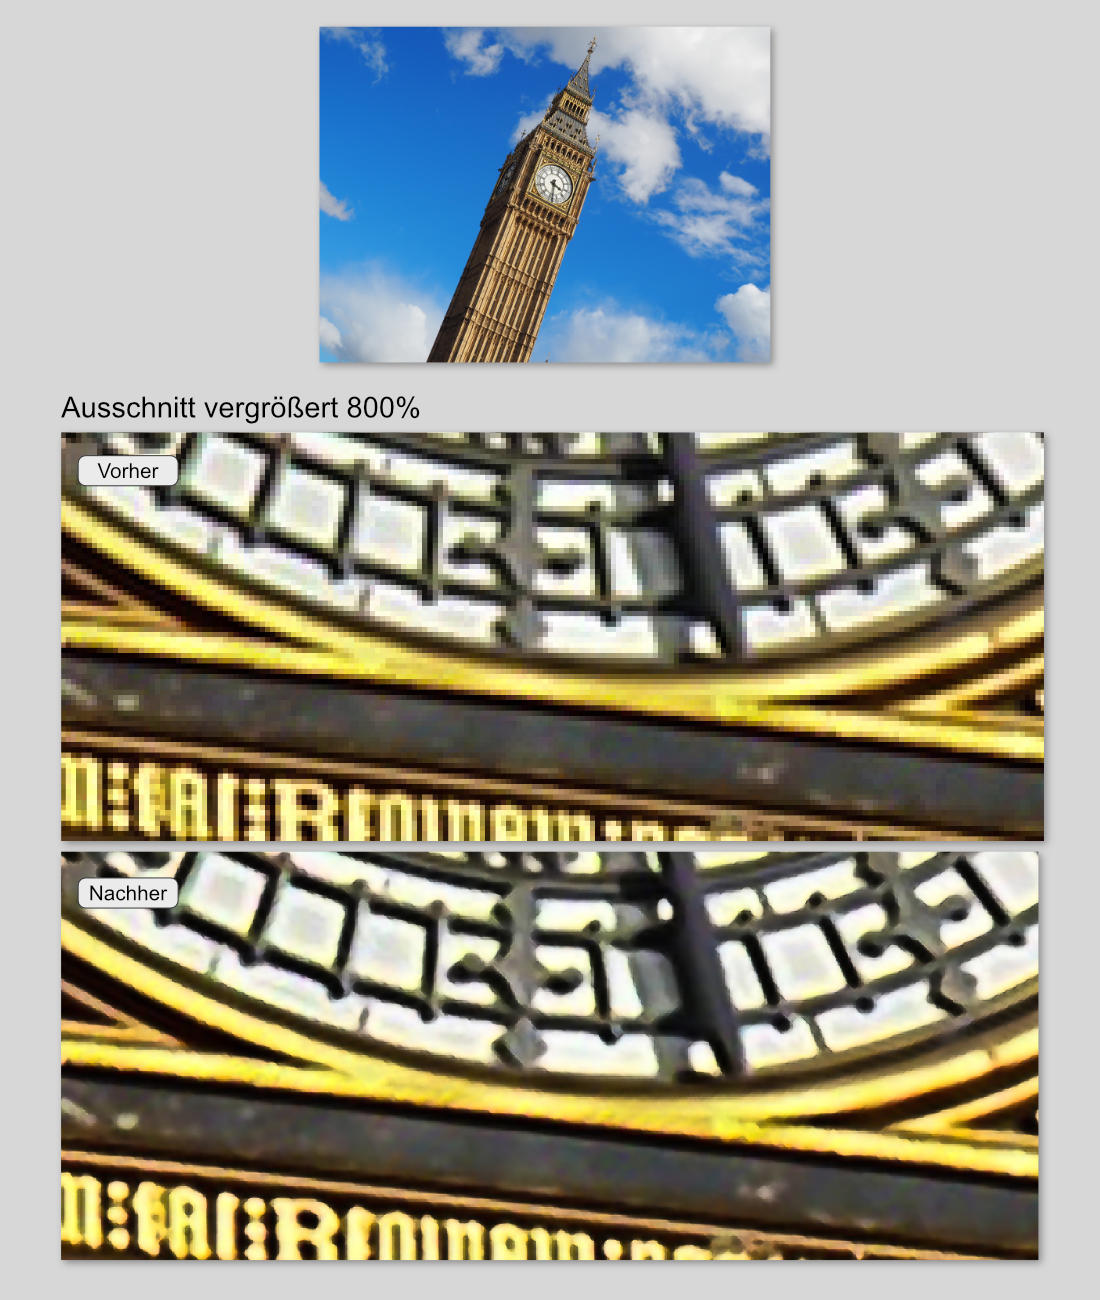 Beispielbild -Ausschnitssvergrößerung Uhr von Big Ben